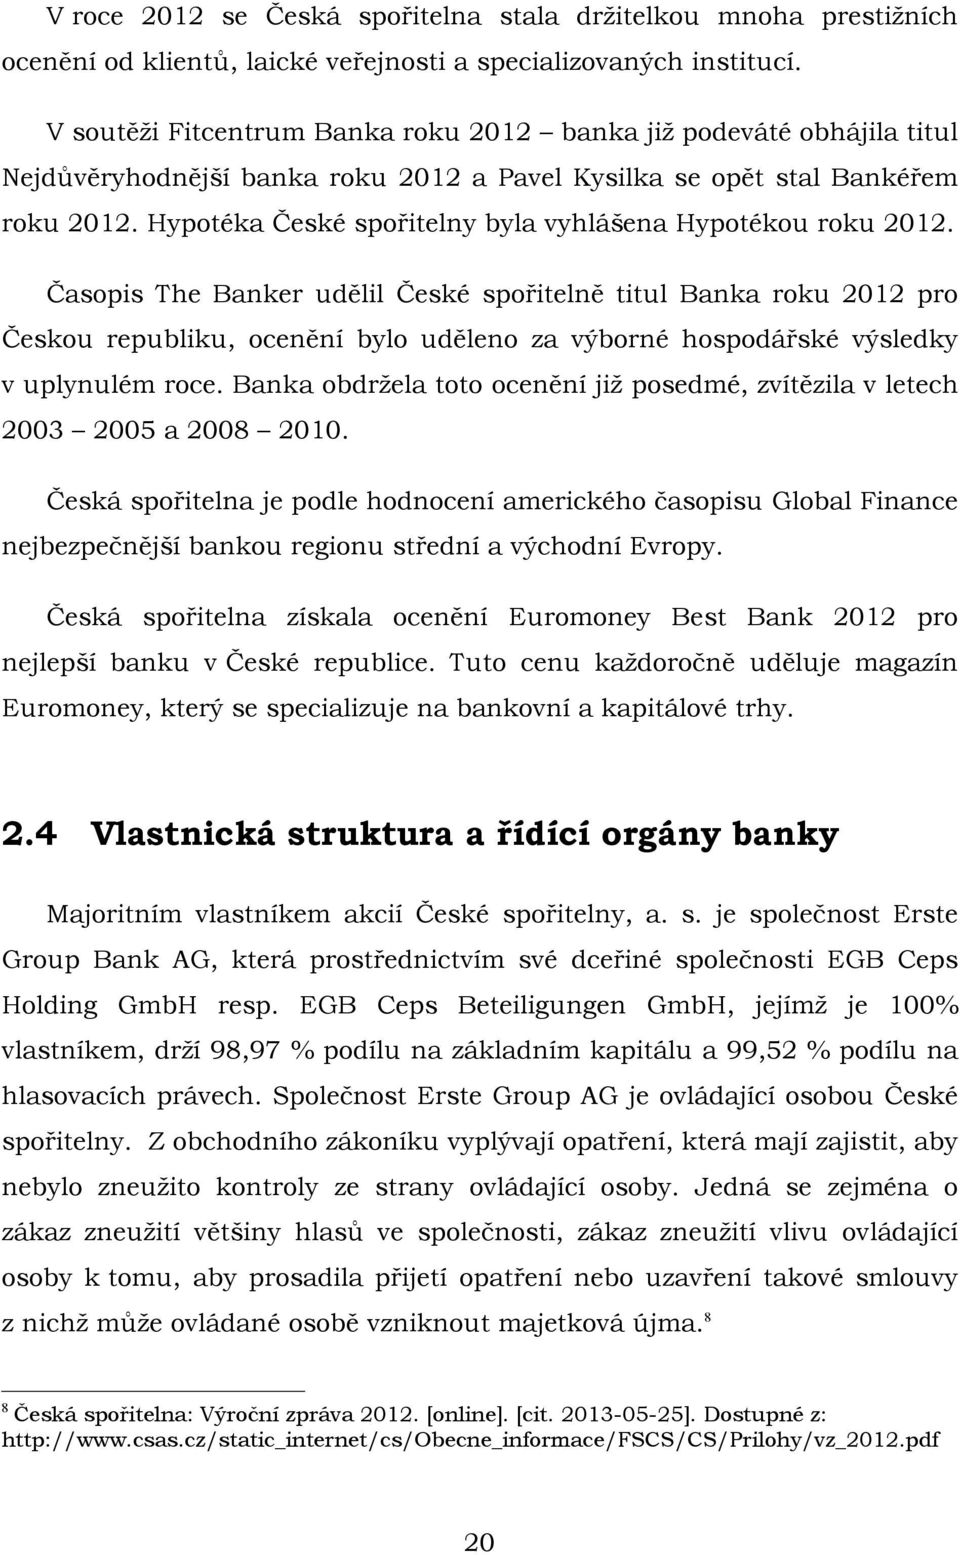 Hypotéka České spořitelny byla vyhlášena Hypotékou roku 2012.